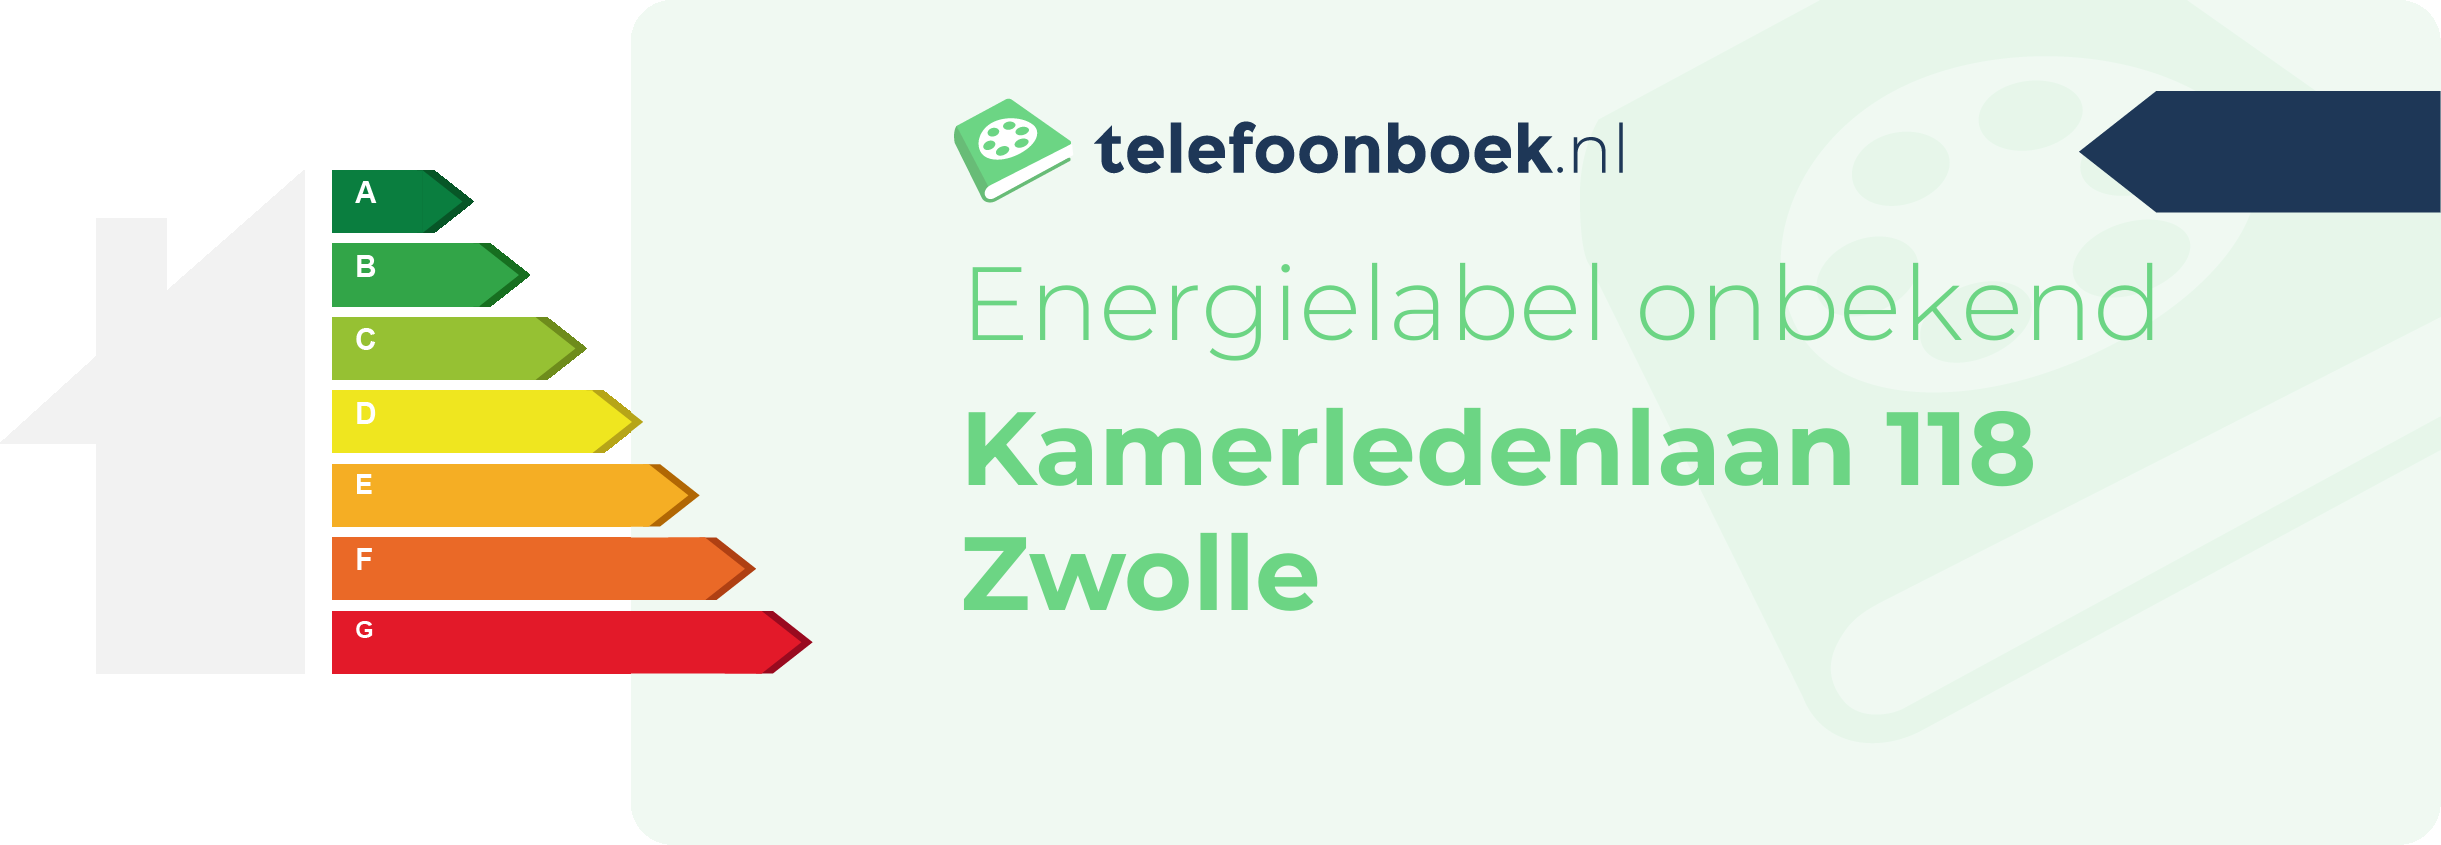 Energielabel Kamerledenlaan 118 Zwolle